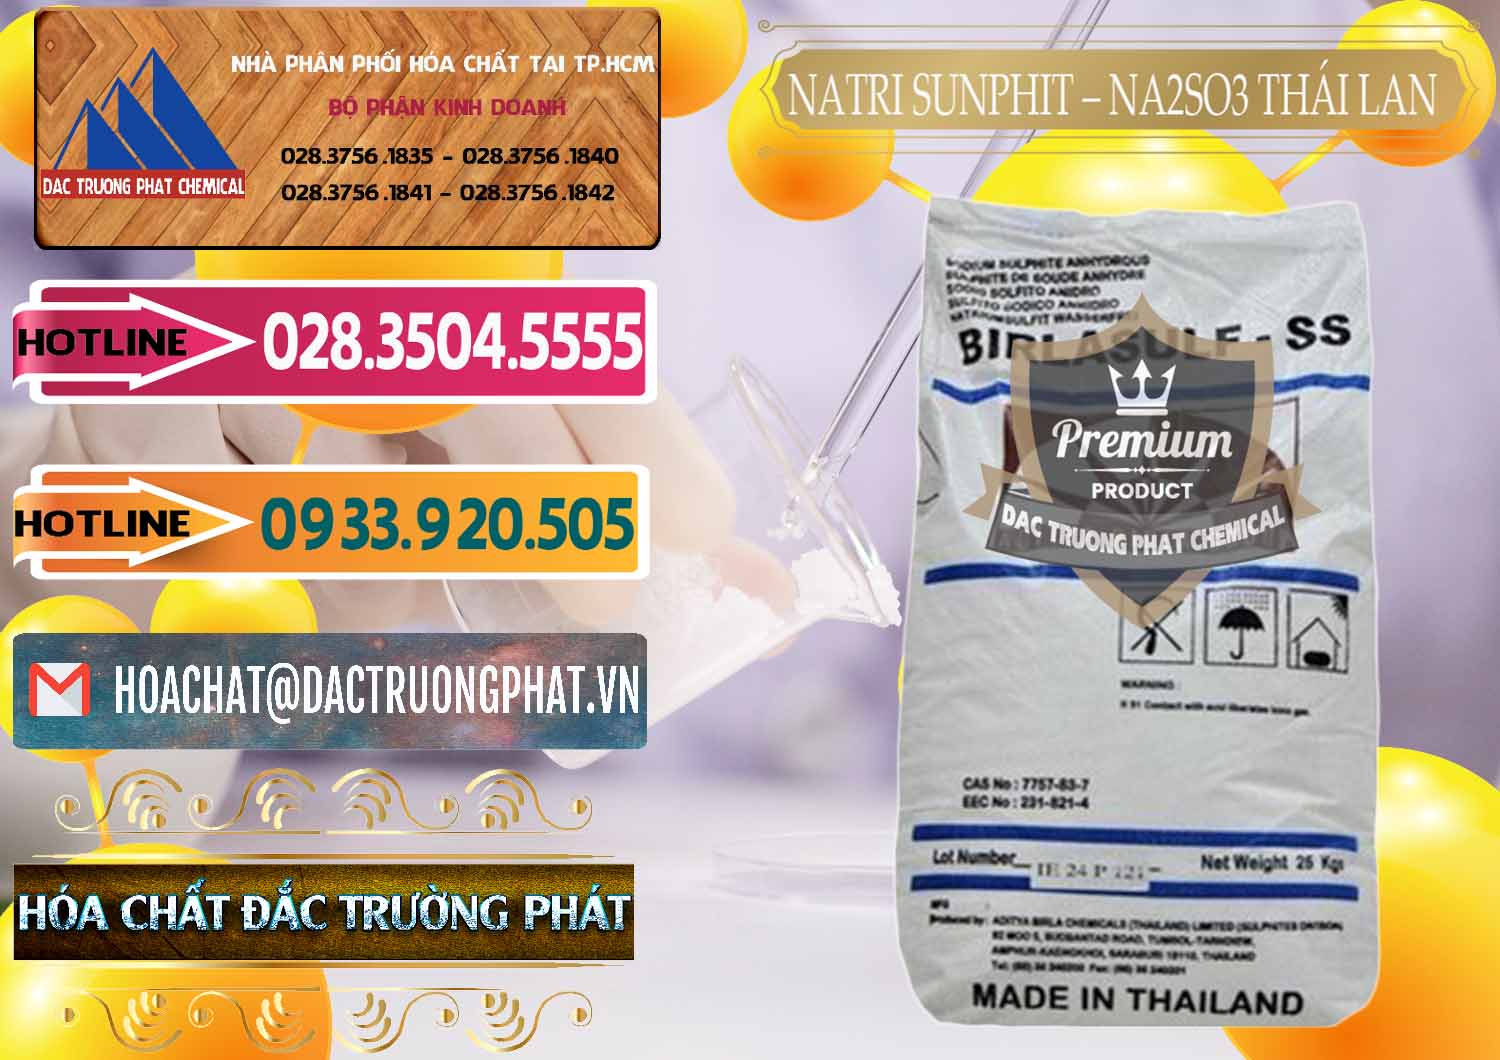 Đơn vị chuyên kinh doanh và bán Natri Sunphit - NA2SO3 Thái Lan - 0105 - Cty chuyên bán và cung cấp hóa chất tại TP.HCM - dactruongphat.vn